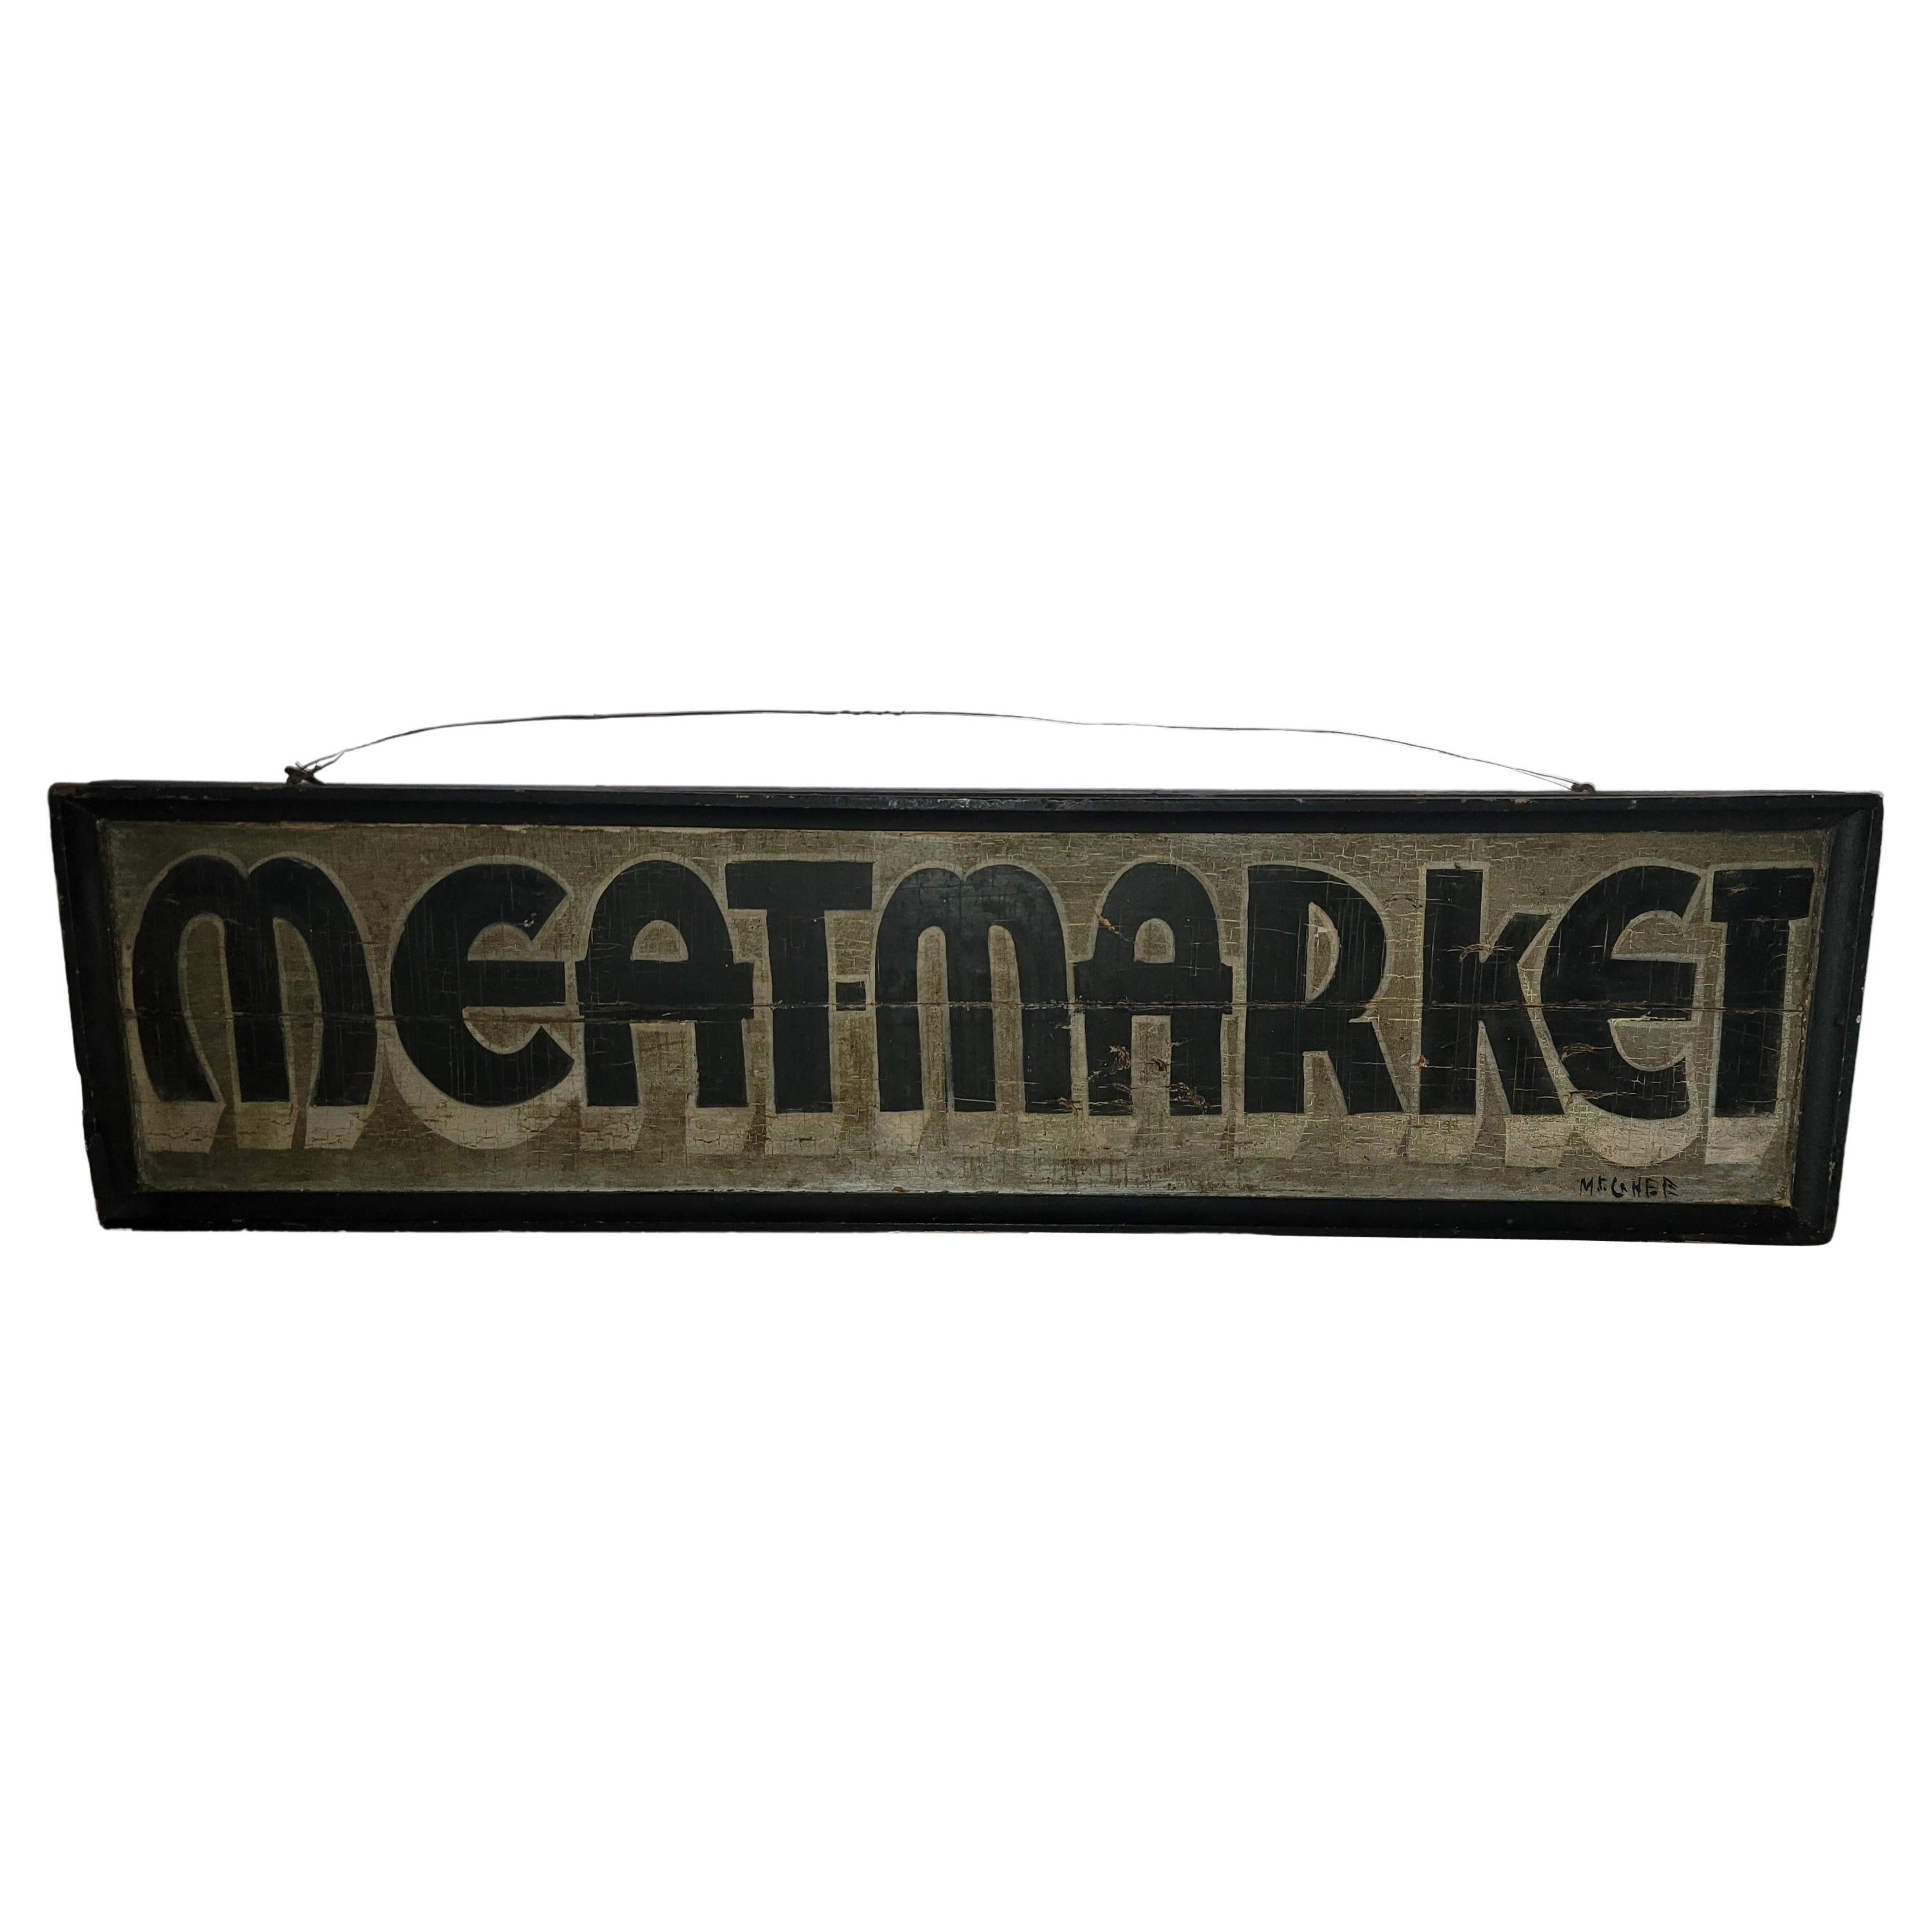 Panneau de commerce du 20e siècle « Meat Market » de Pennsylvanie